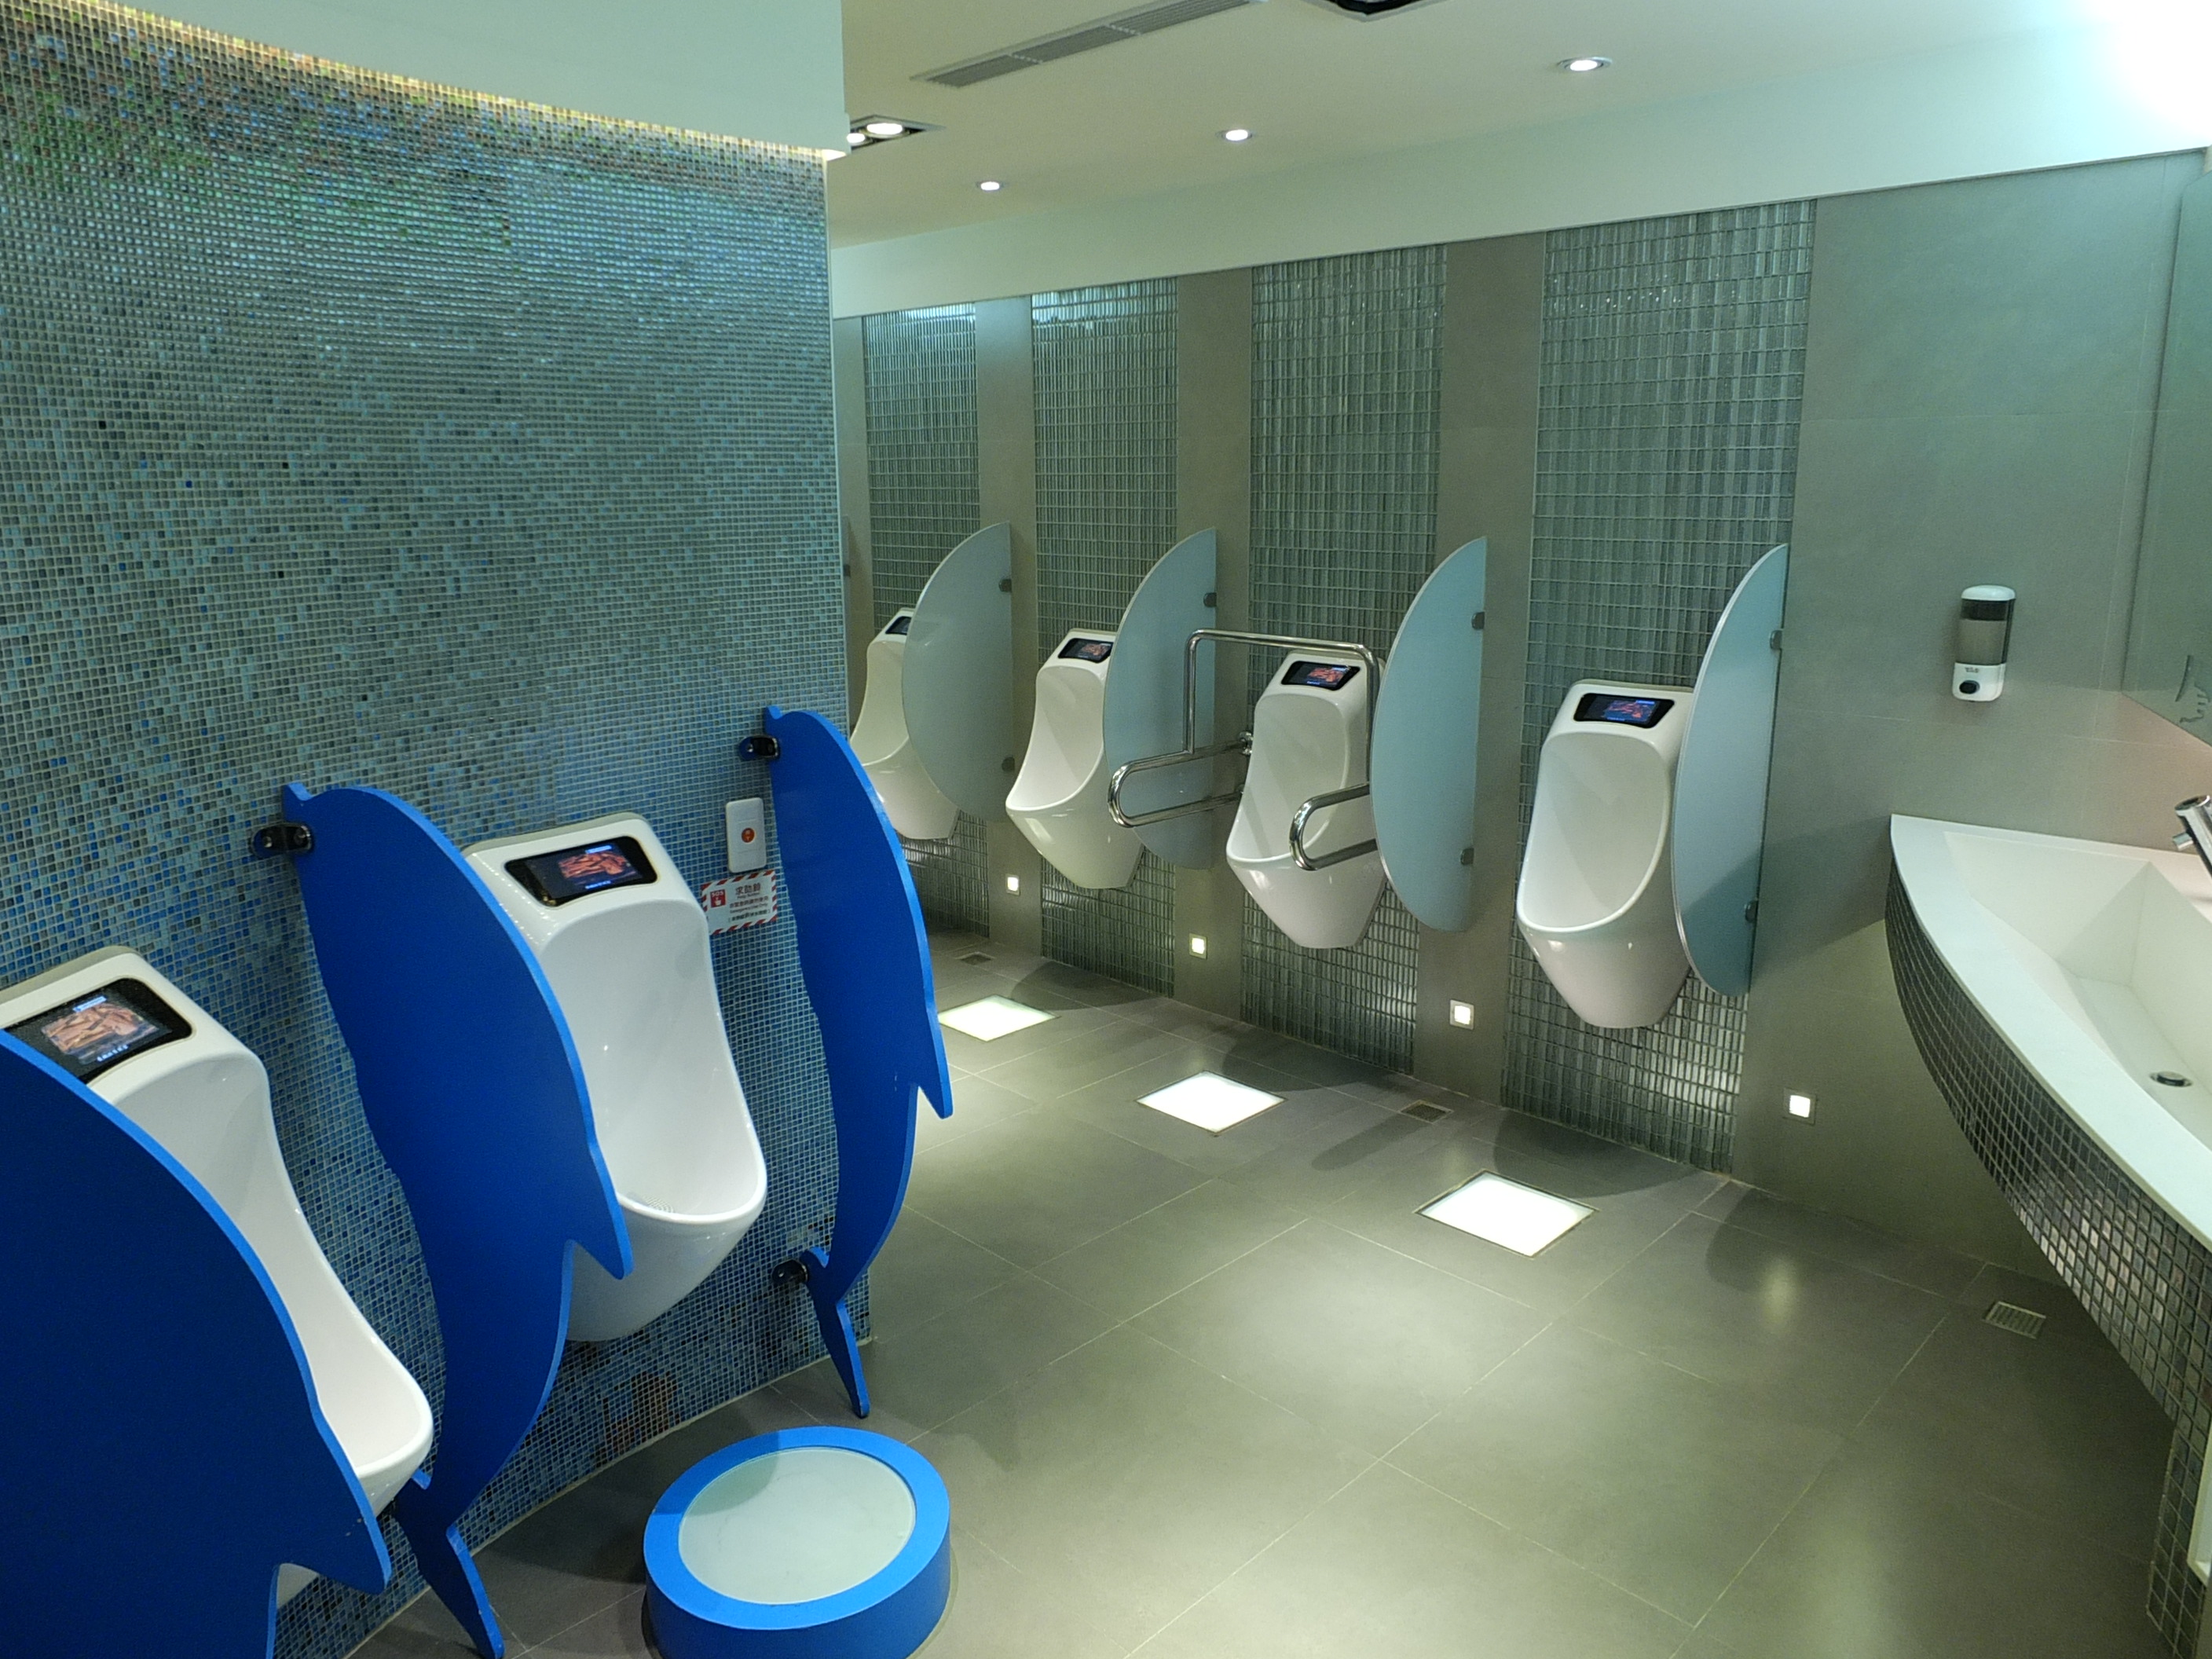 台北駅に高性能トイレが登場 過去の固定概念を刷新 台湾新聞